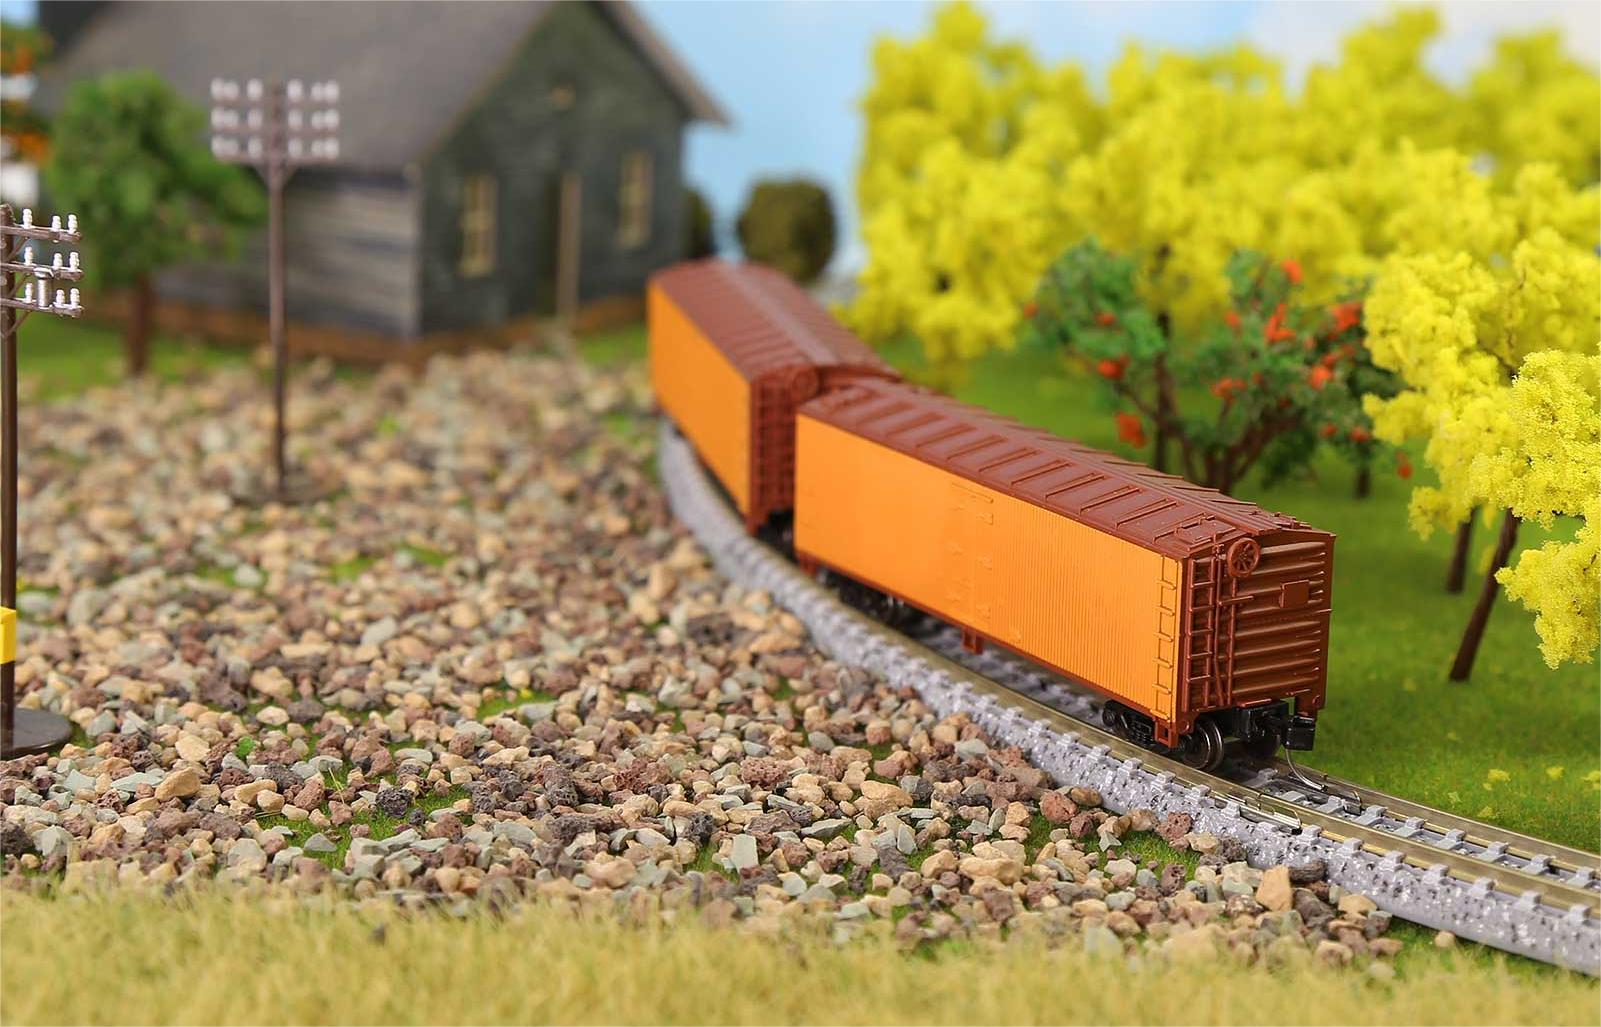 N Scale Model Railways: Big Detail in Small Spaces